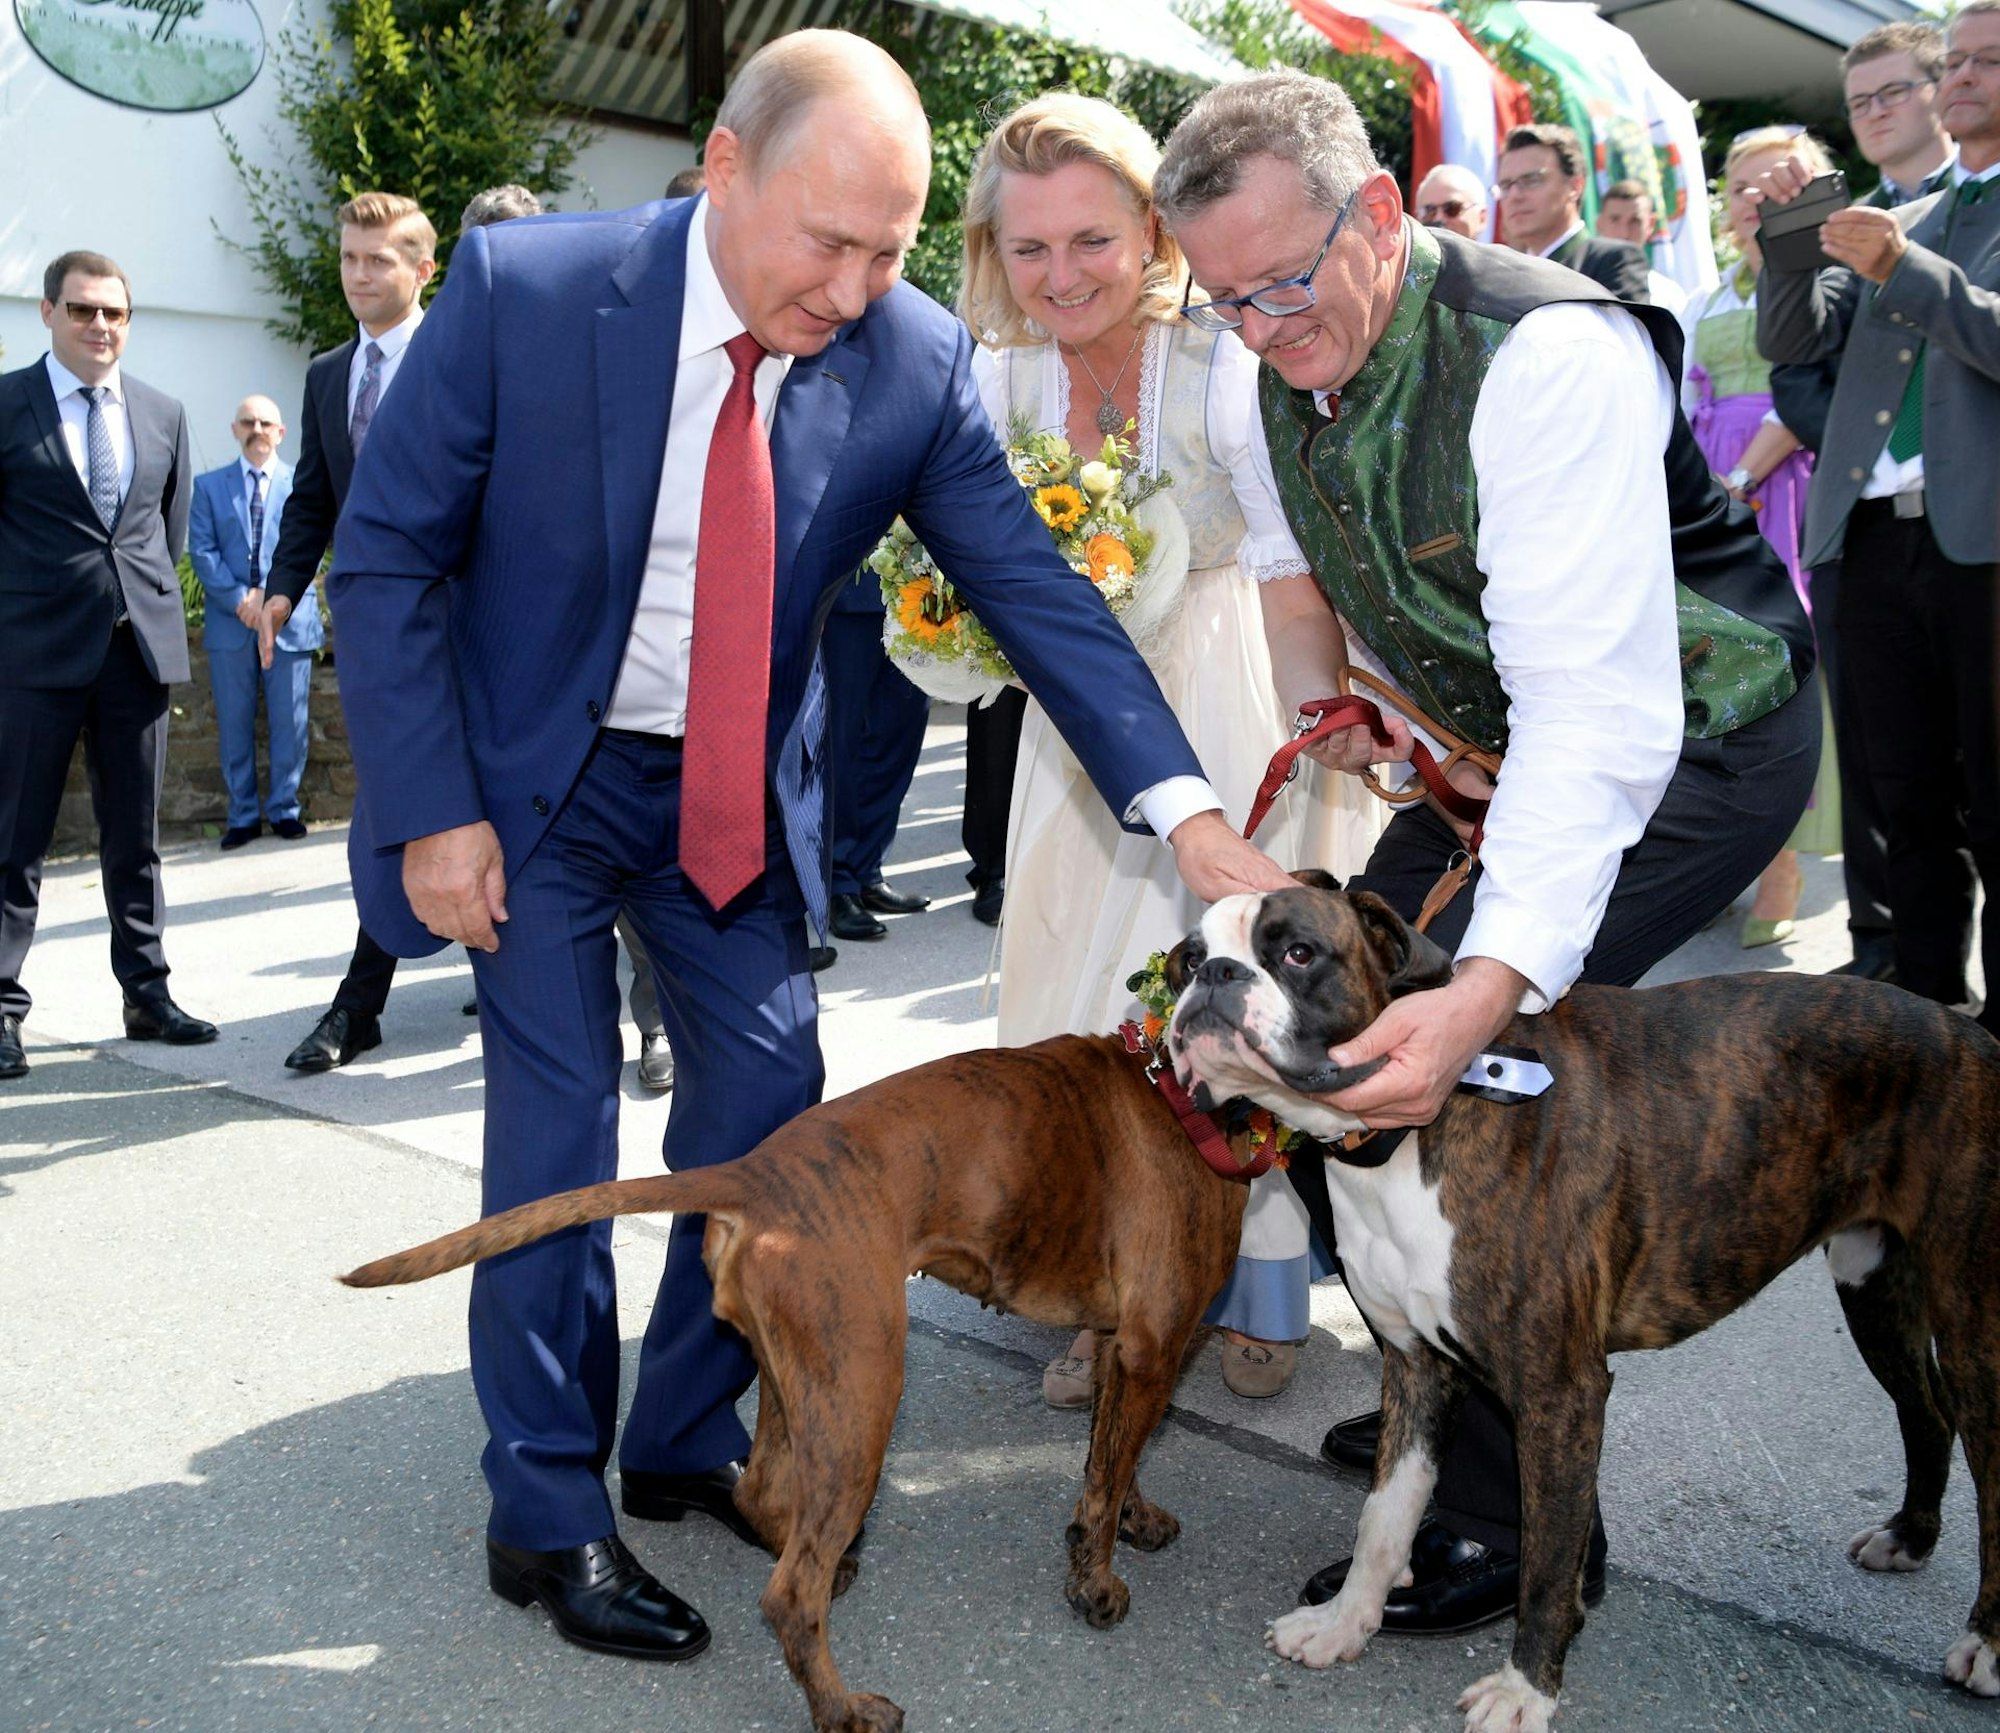 Bild 1 Hochzeit Kneissl Putin